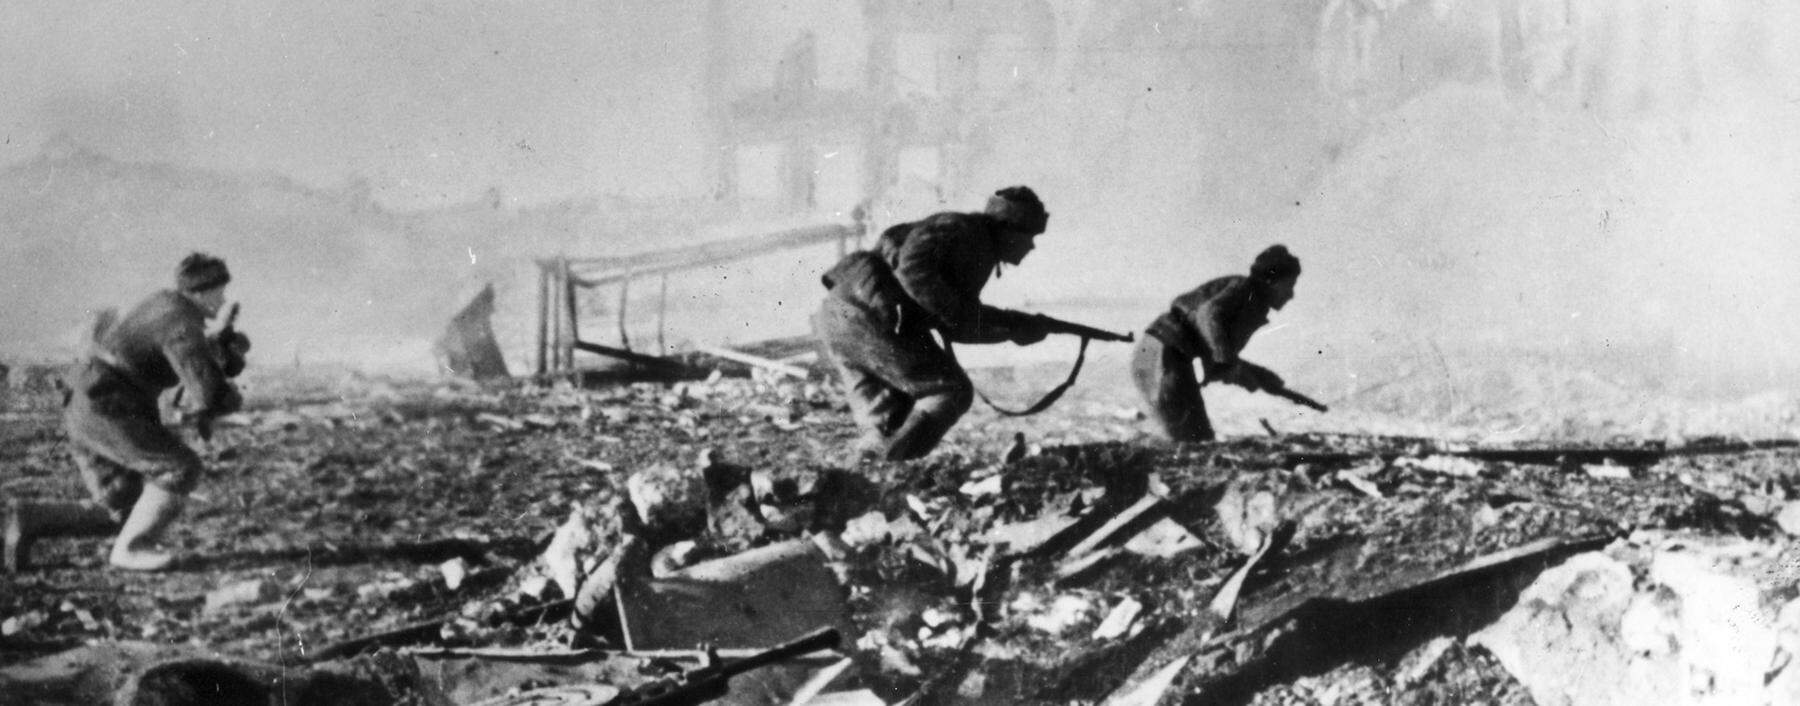 Soldaten der sowjetischen 62. Armee im September 1942 beim Häuserkampf gegen die deutschen Truppen in Stalingrad.